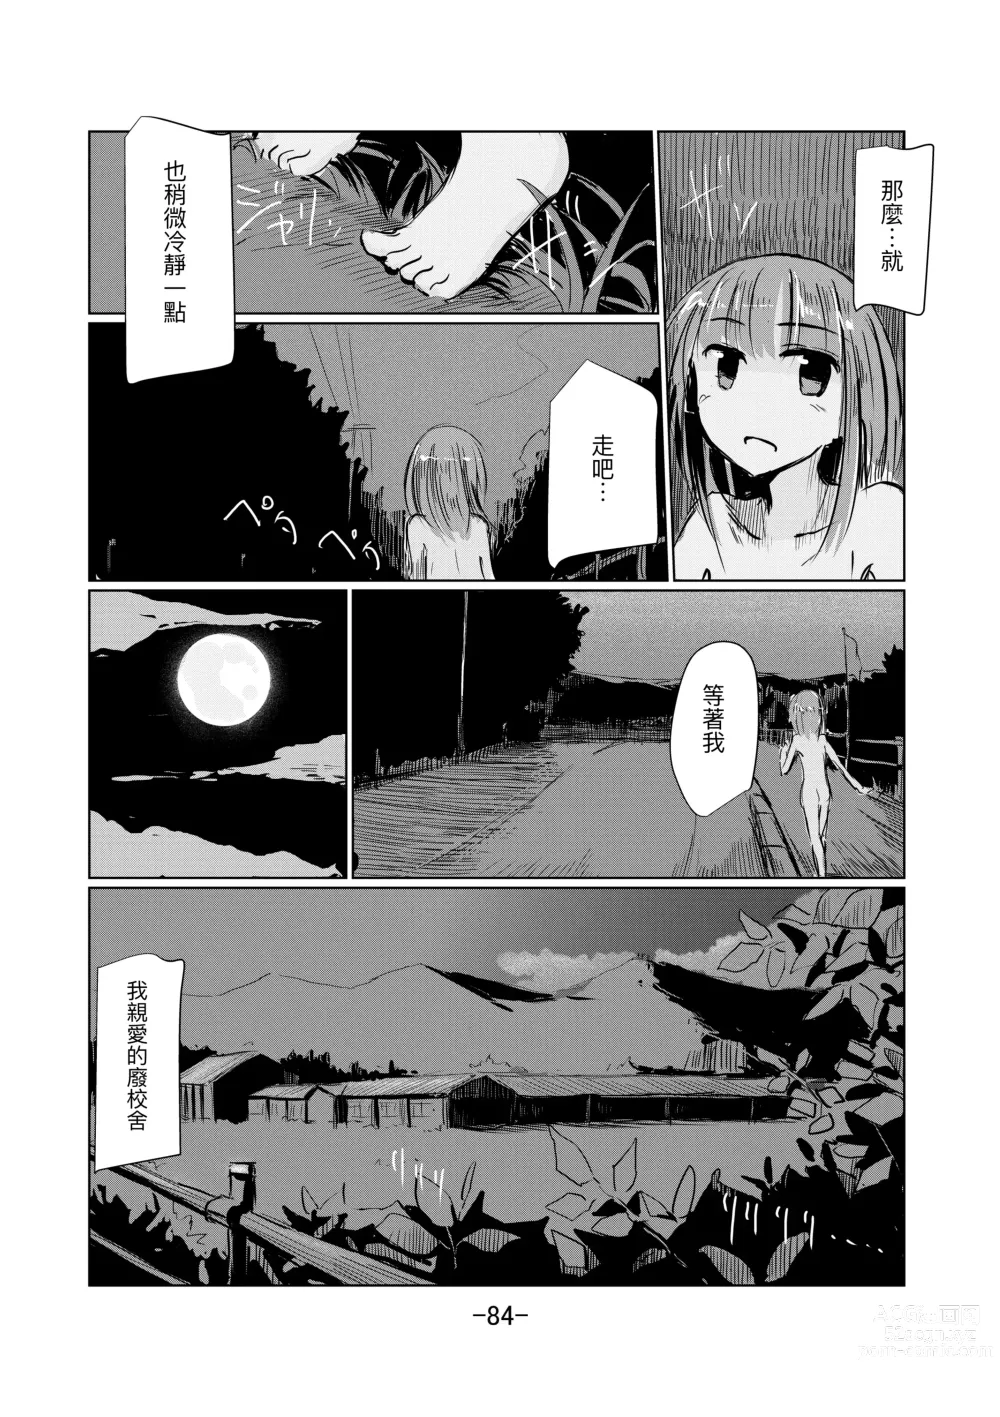 Page 85 of doujinshi Shoujo to Haikousha II